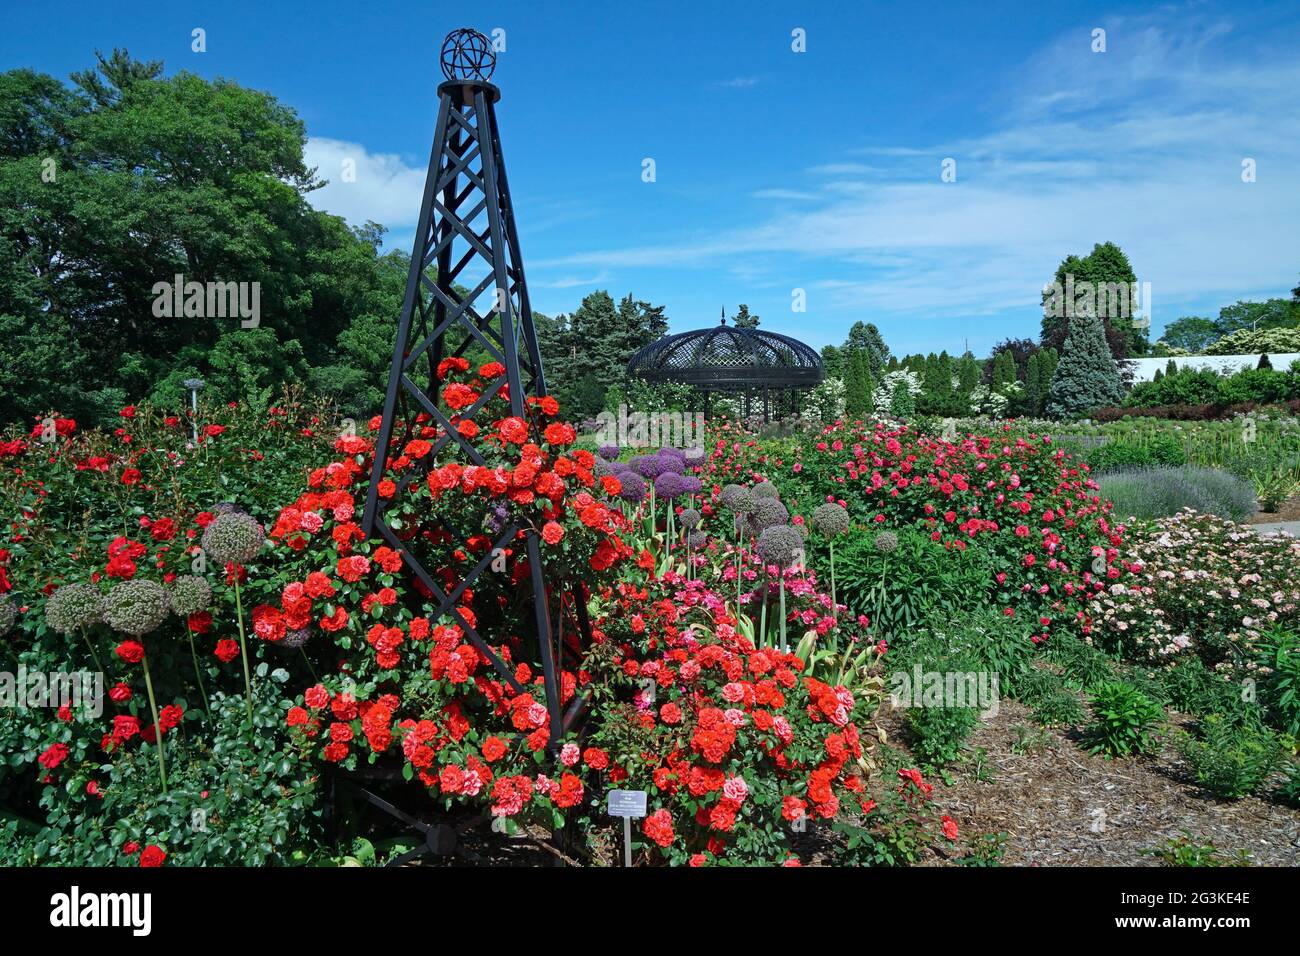 Leuchtend rote Rosen auf einem Gitter im Rosengarten des Royal Botanical Gardens in Hamilton, Ontario, Kanada Stockfoto